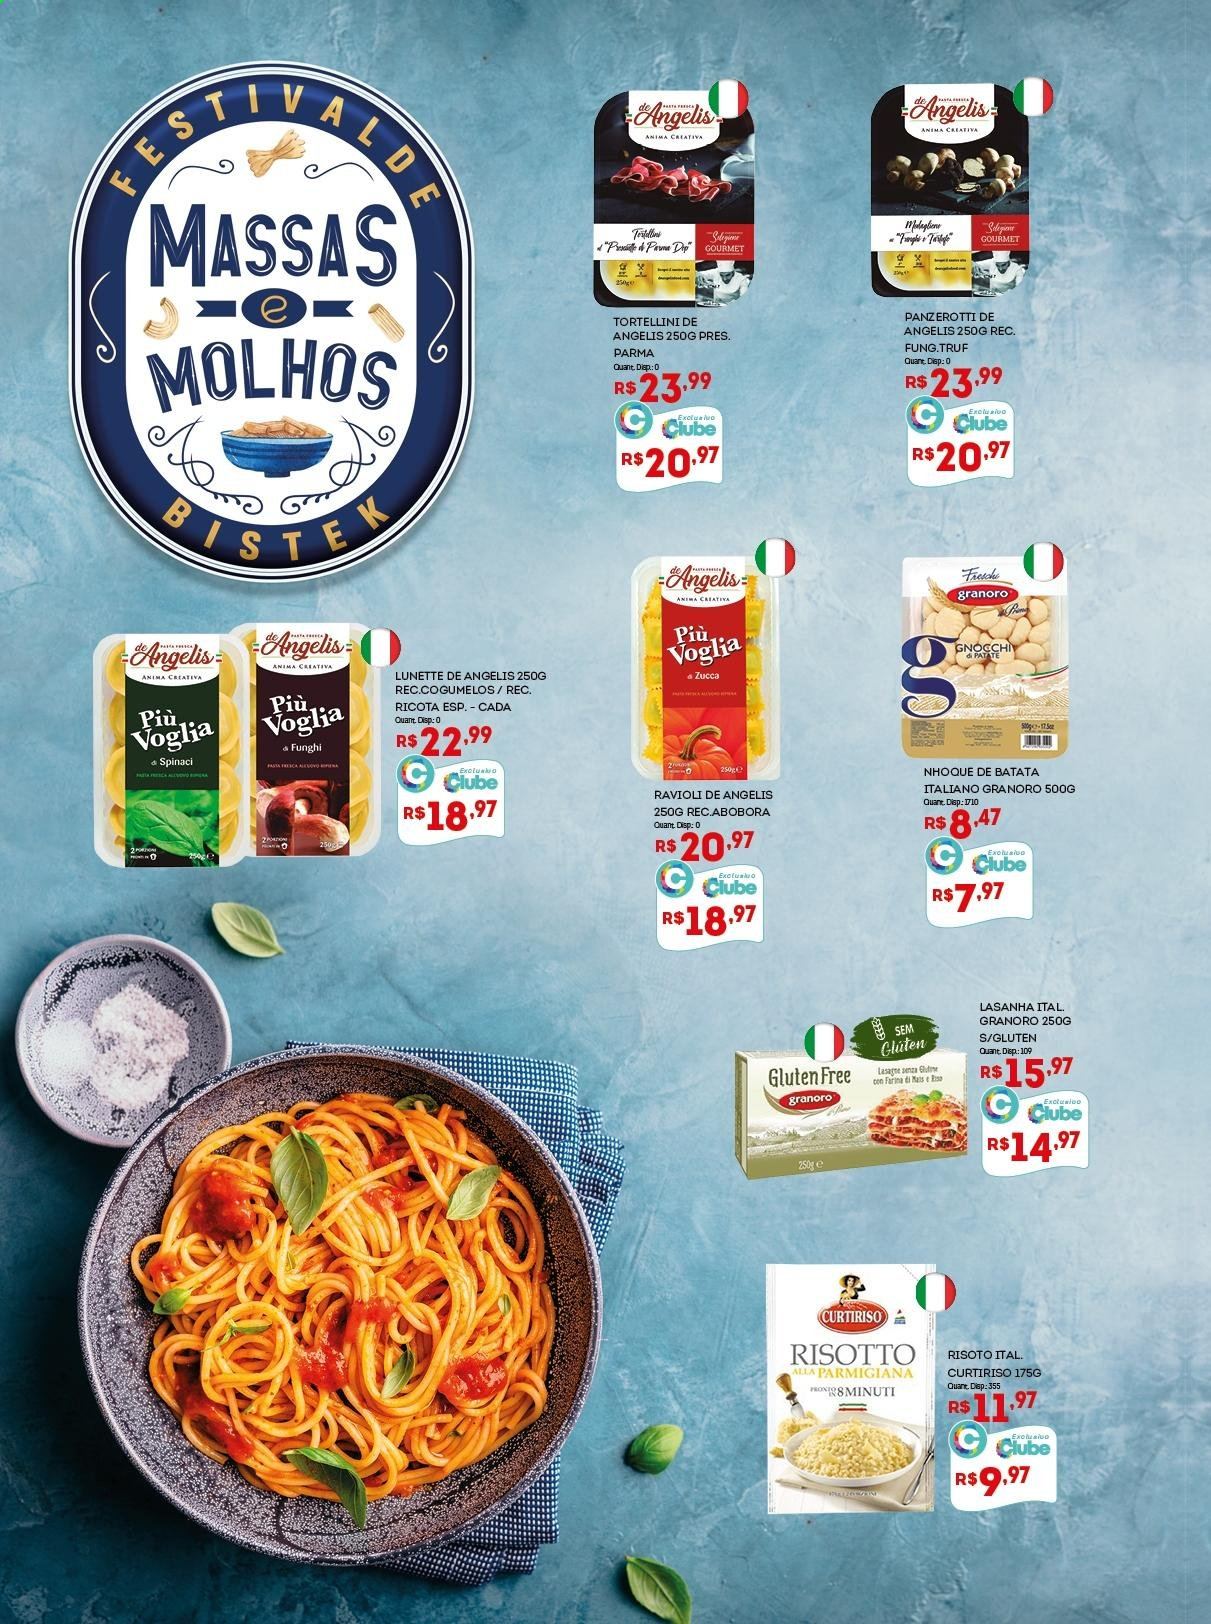 thumbnail - Folheto Bistek Supermercados - 21/07/2021 - 03/08/2021 - Produtos em promoção - abóbora, cogumelo, lasanha, nhoque, risoto, ravioli, tortellini, molho, gnocchi. Página 2.